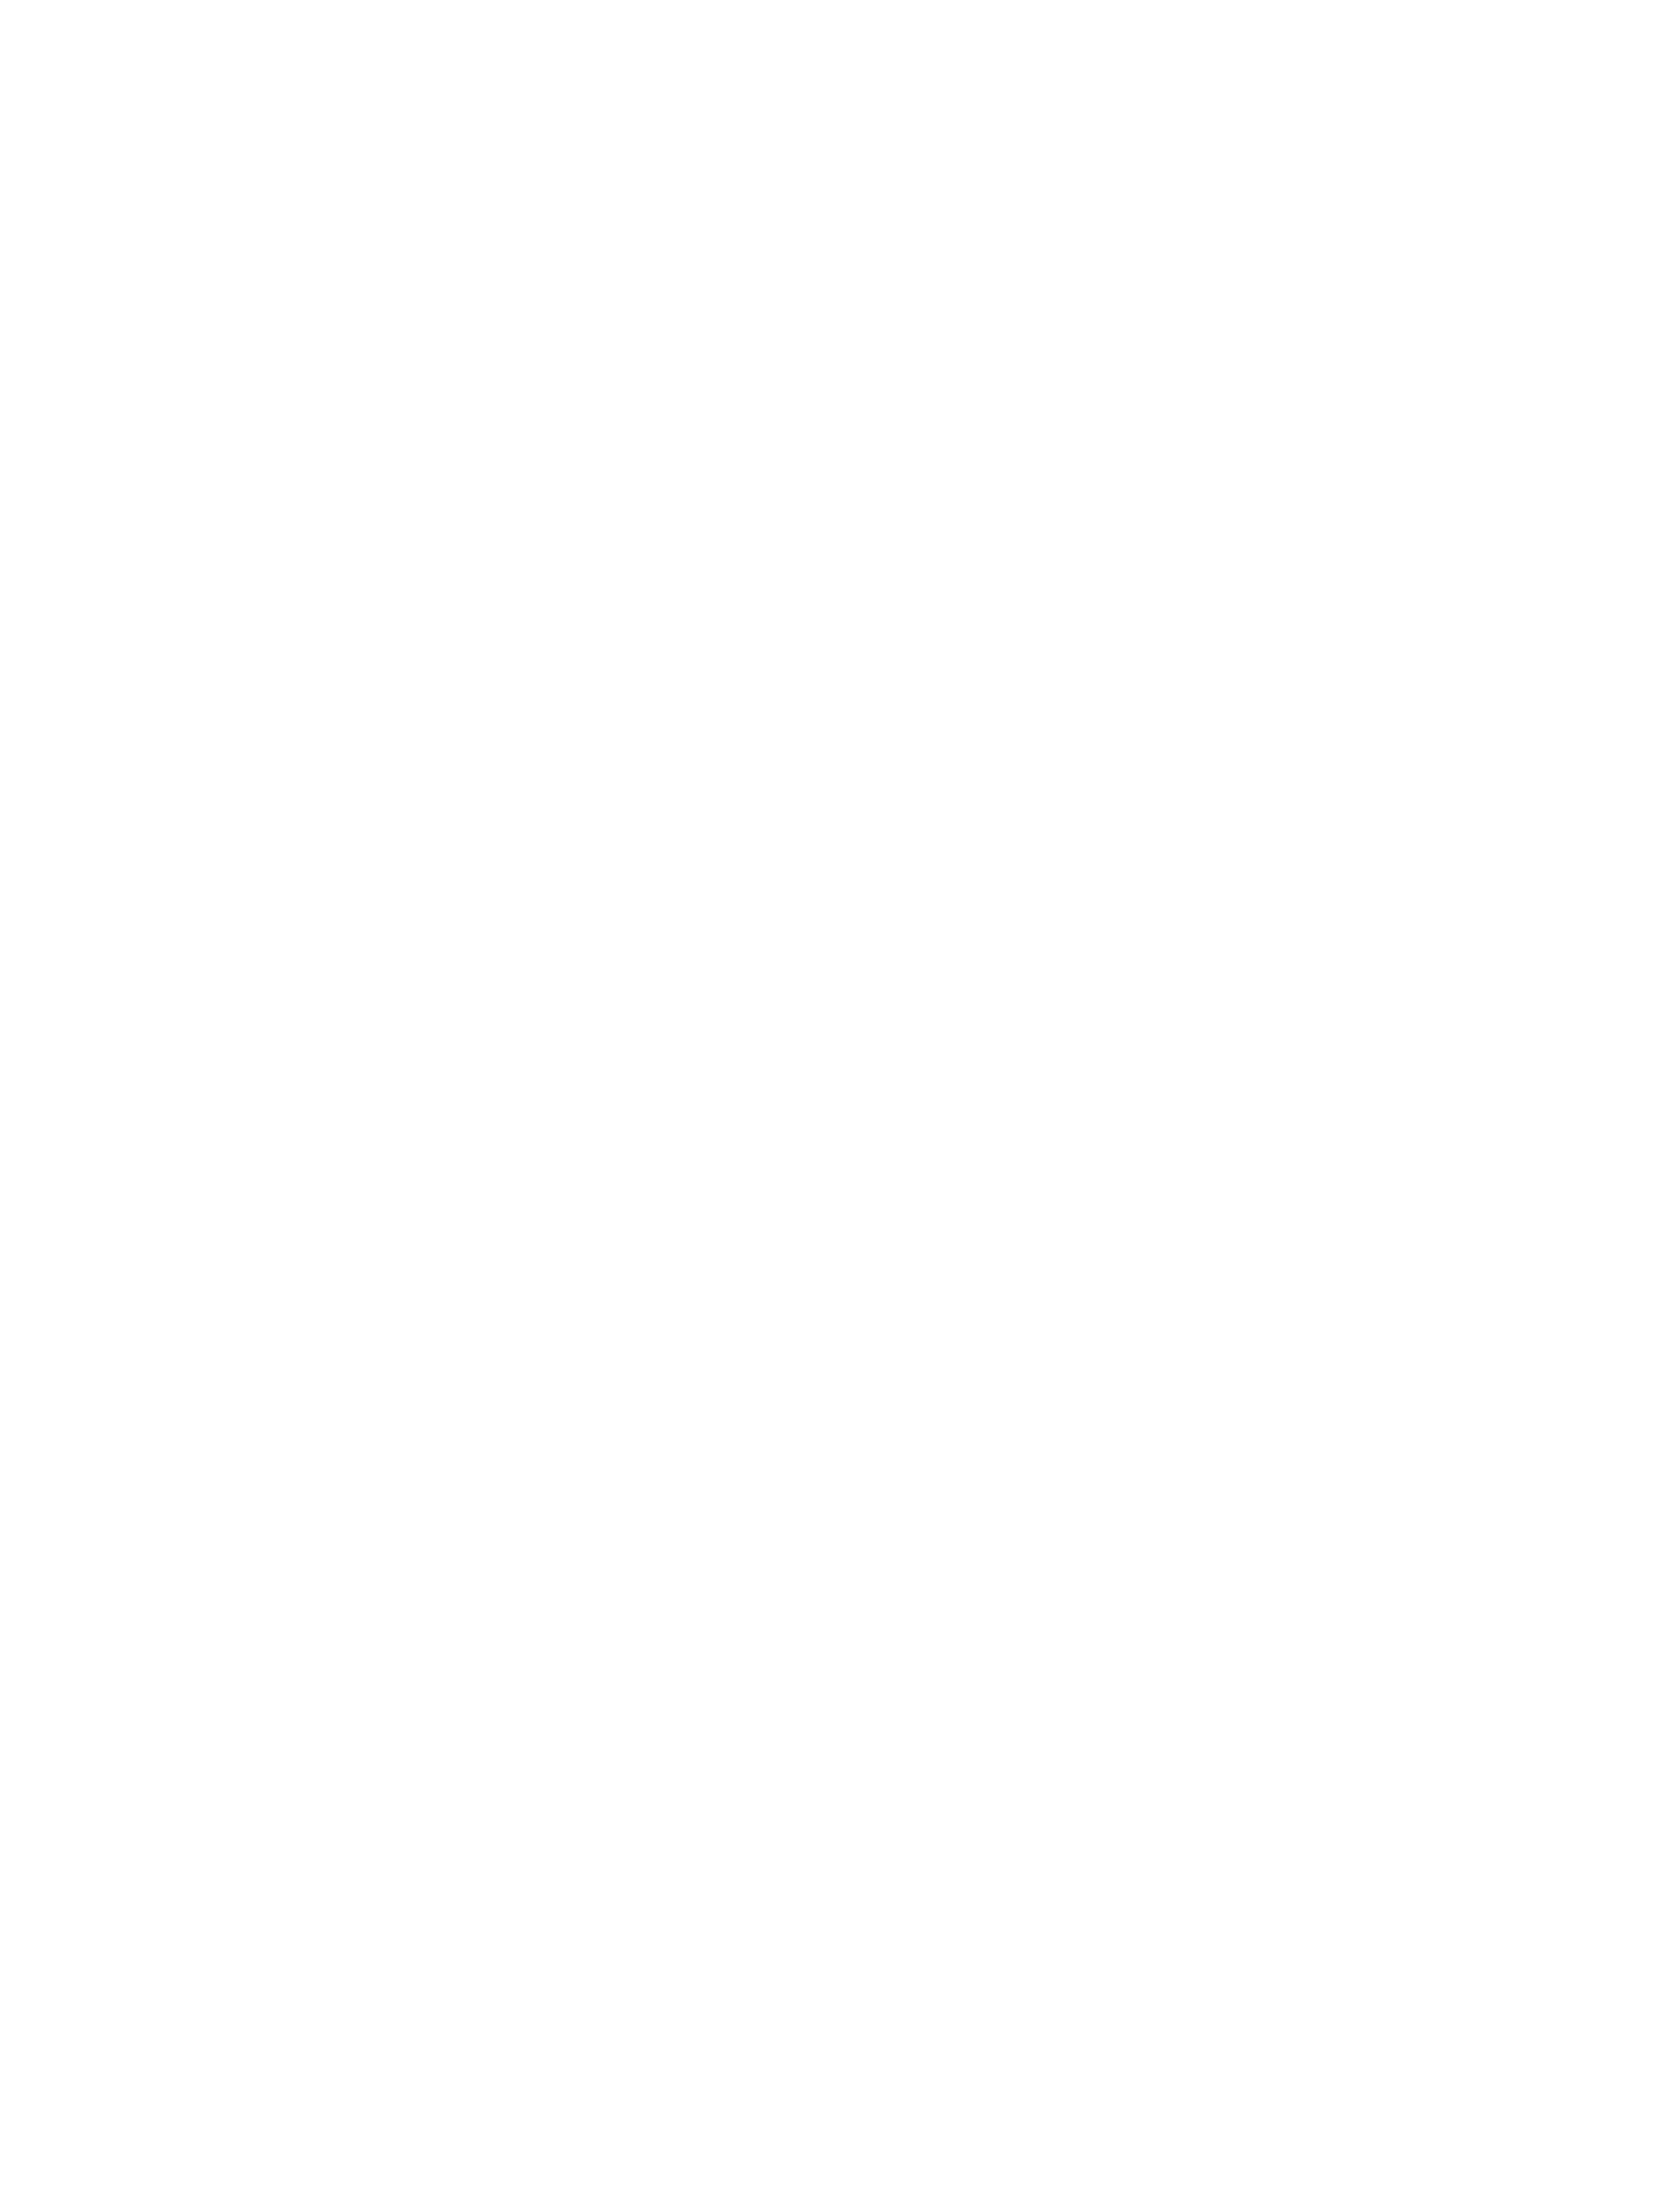 West 7th Design Studio logo seal